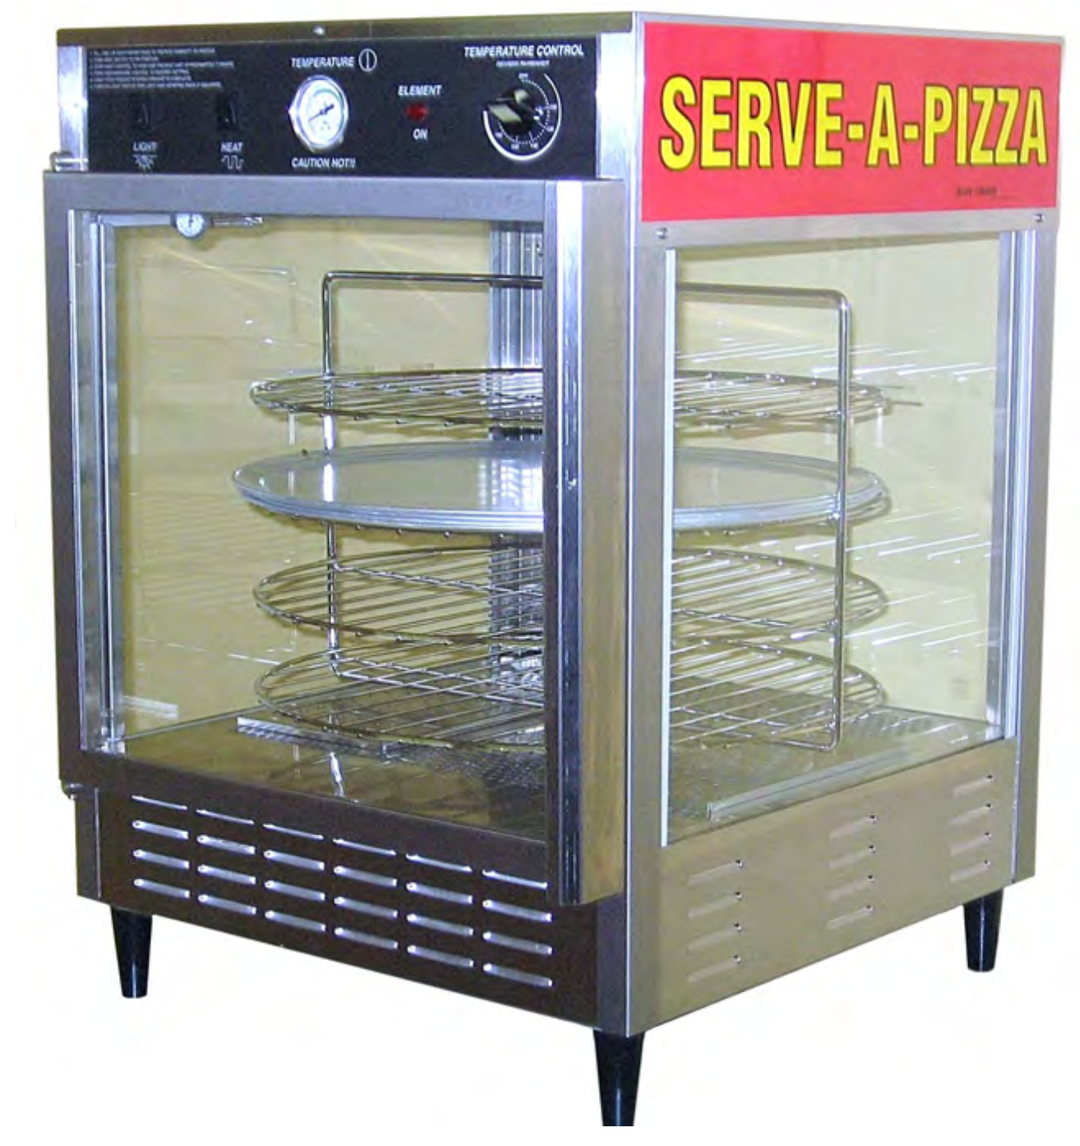 Réchaud à pizza humidifié 5550 - SERVE-A-PIZZA